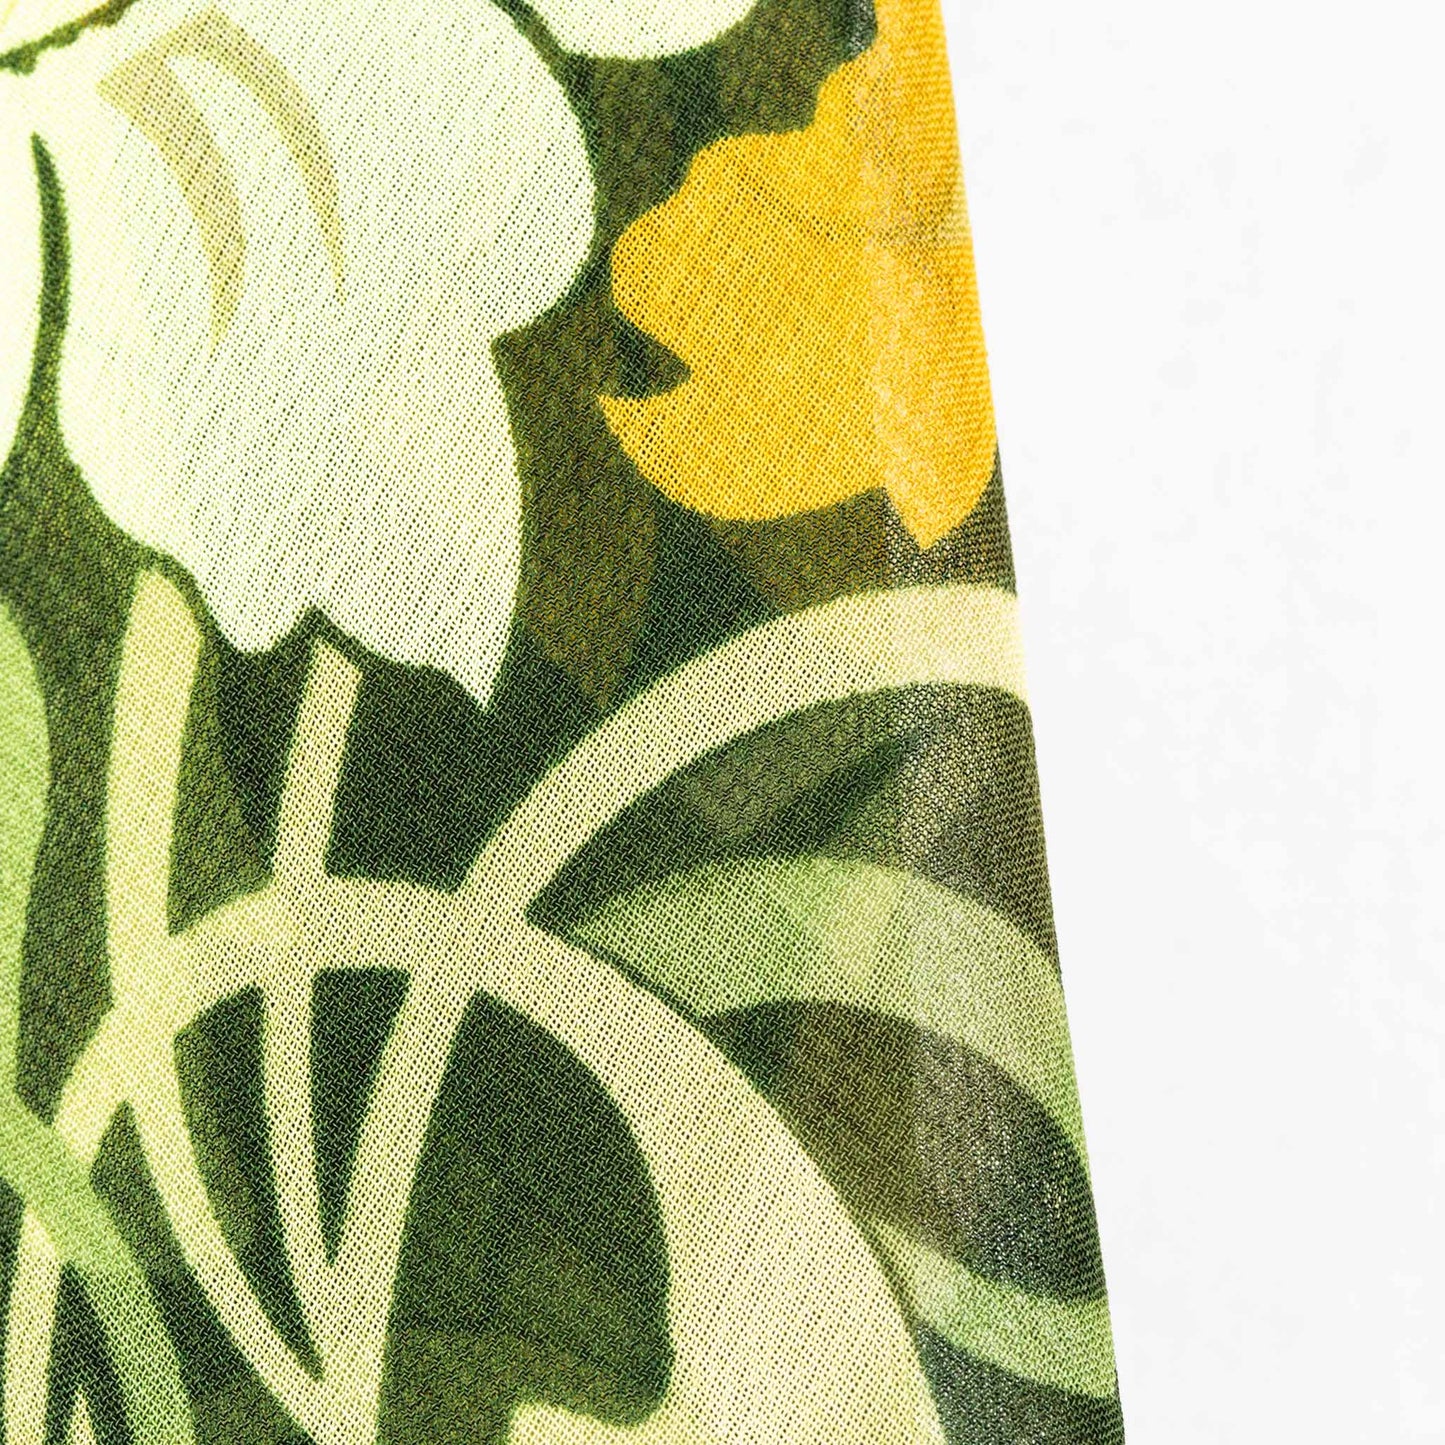 Eșarfă damă din mătase cu imprimeu floral abstract, 65 x 65 cm - Verde